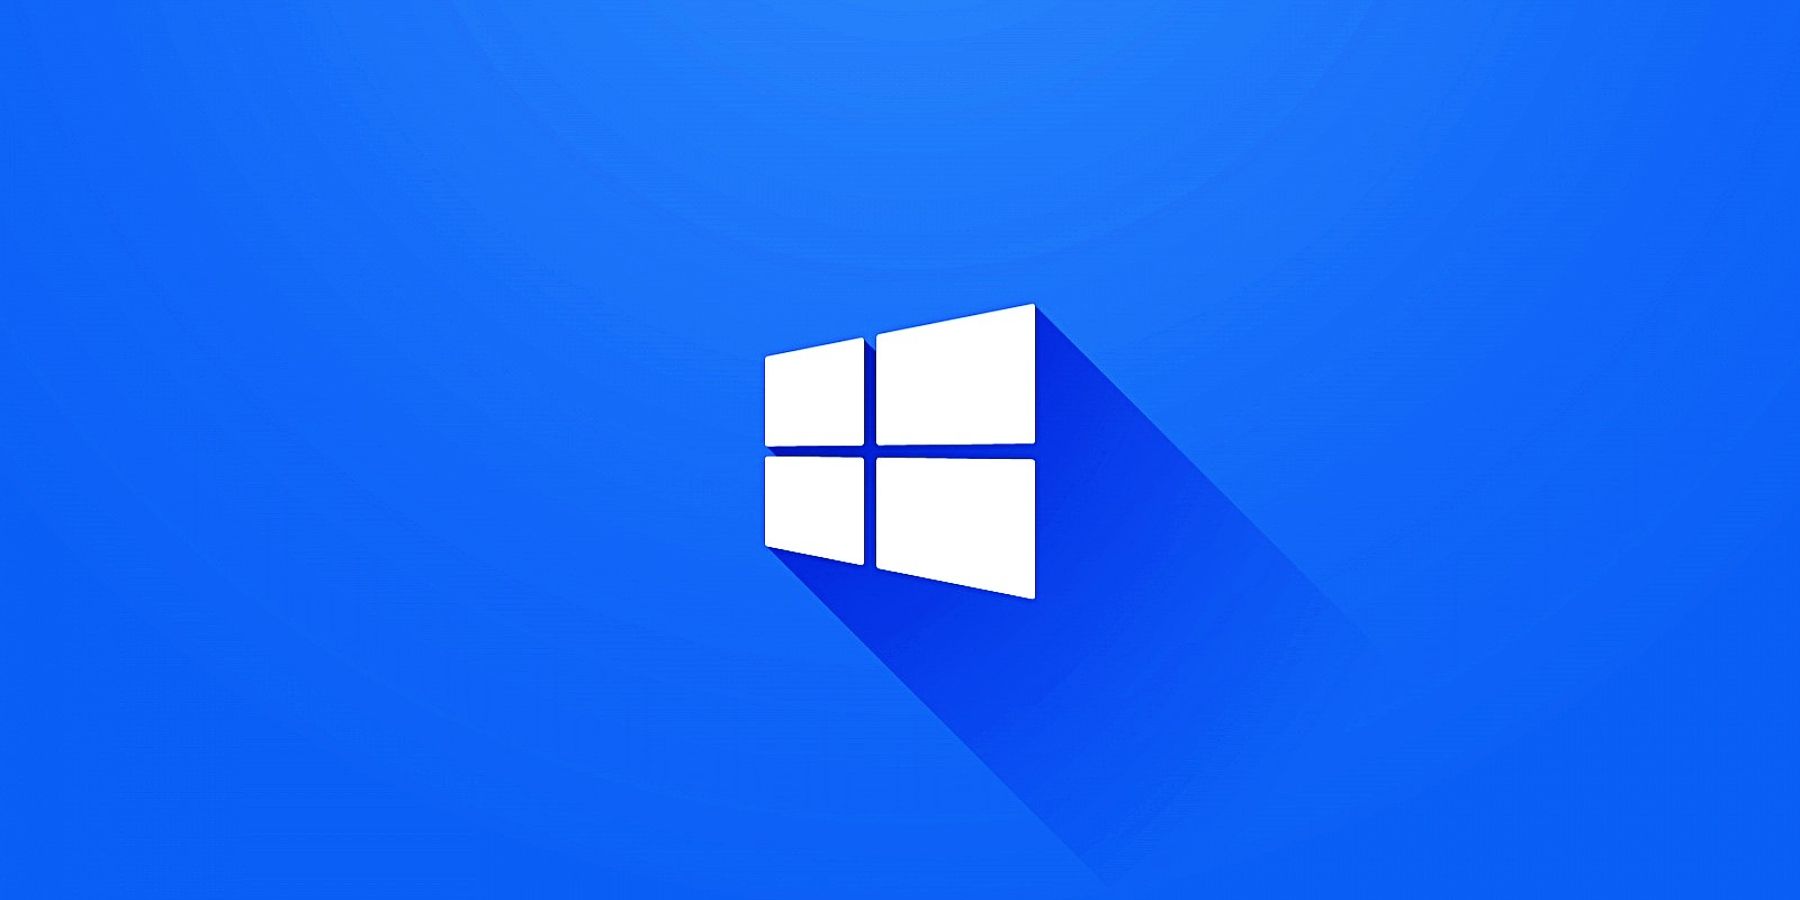 Windows 12 có thể ra mắt sớm hơn dự kiến: Windows luôn cập nhật và nâng cấp phiên bản để tạo ra trải nghiệm tốt hơn cho người dùng. Và theo những tin đồn, Windows 12 sẽ ra mắt sớm hơn dự kiến. Điều này giúp cho người dùng có thể trải nghiệm sớm những công nghệ tiên tiến của Windows